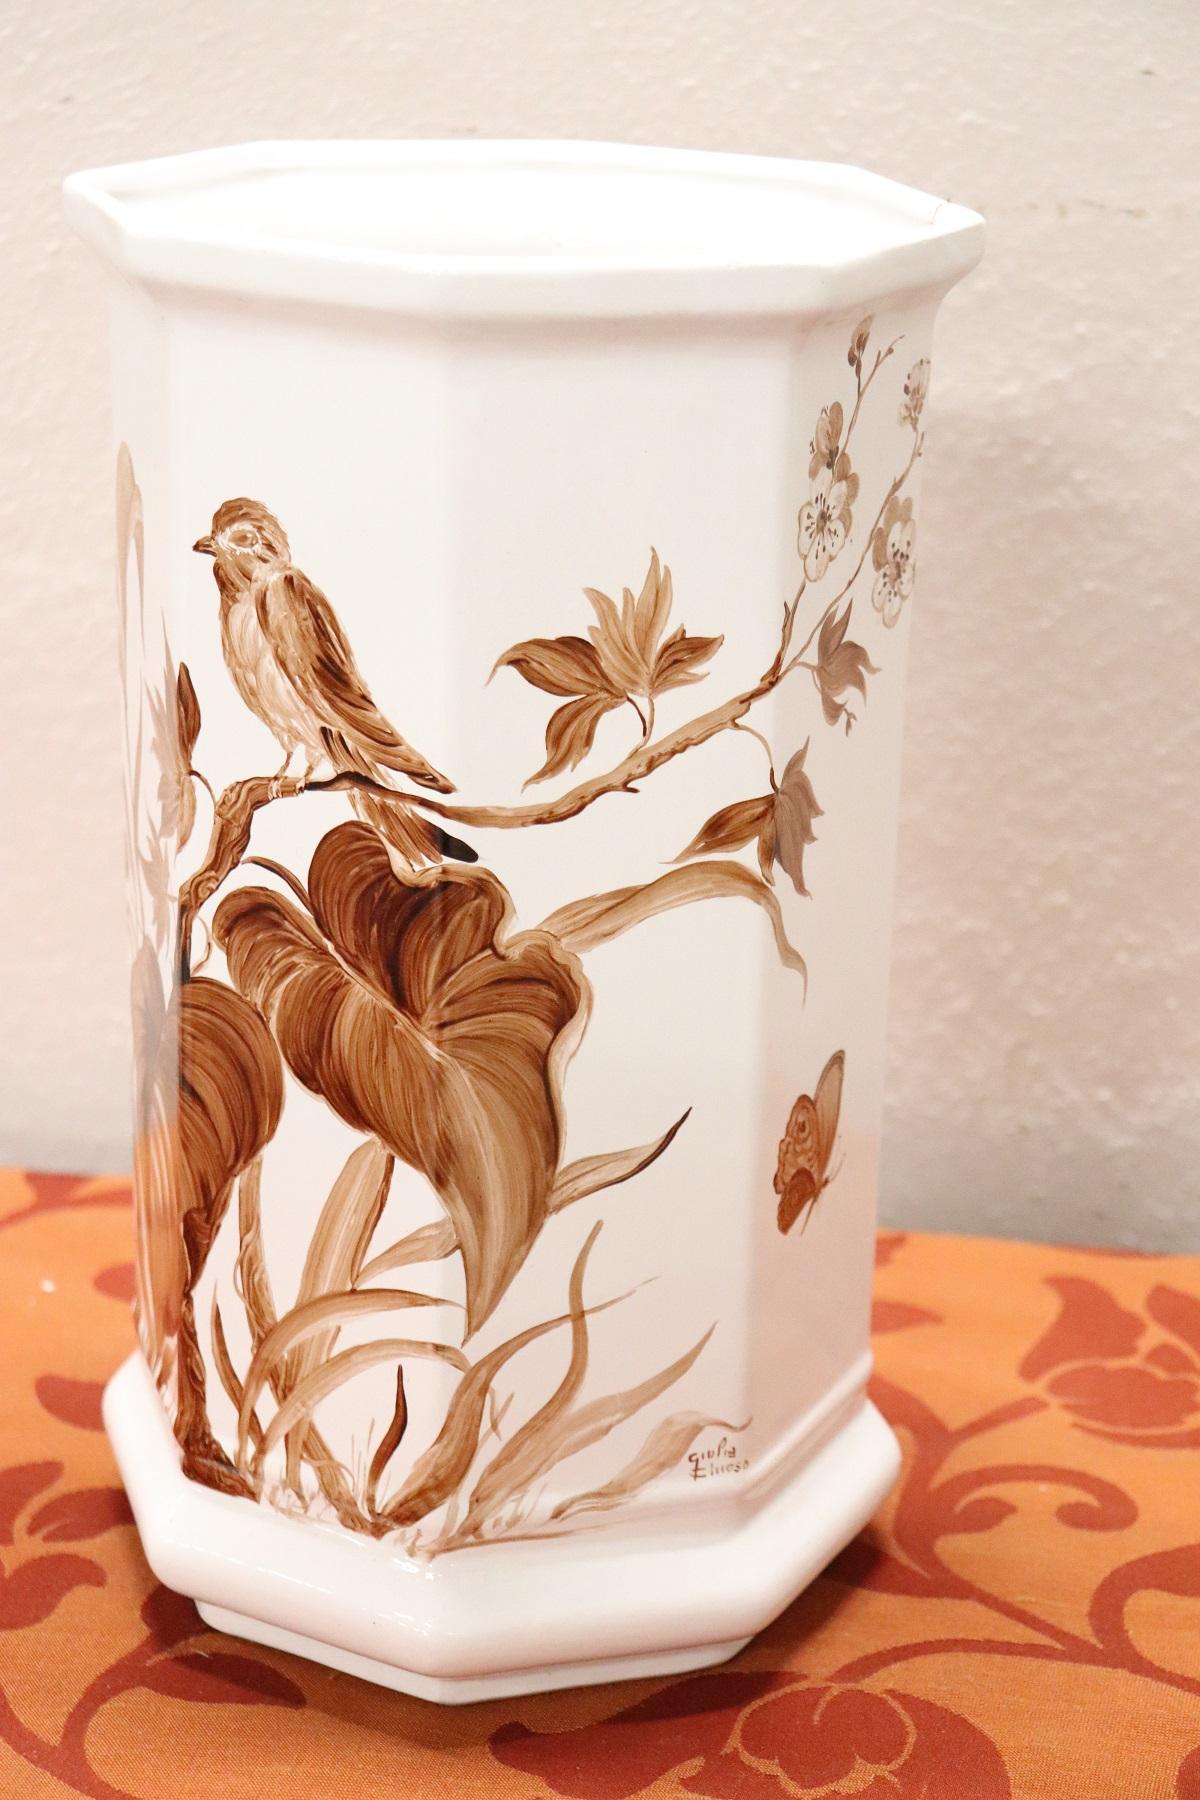 Magnifique vase italien en céramique blanche finement peinte à la main par l'artiste Giulia Chioso. Signé. Parfait pour contenir des fleurs !
   